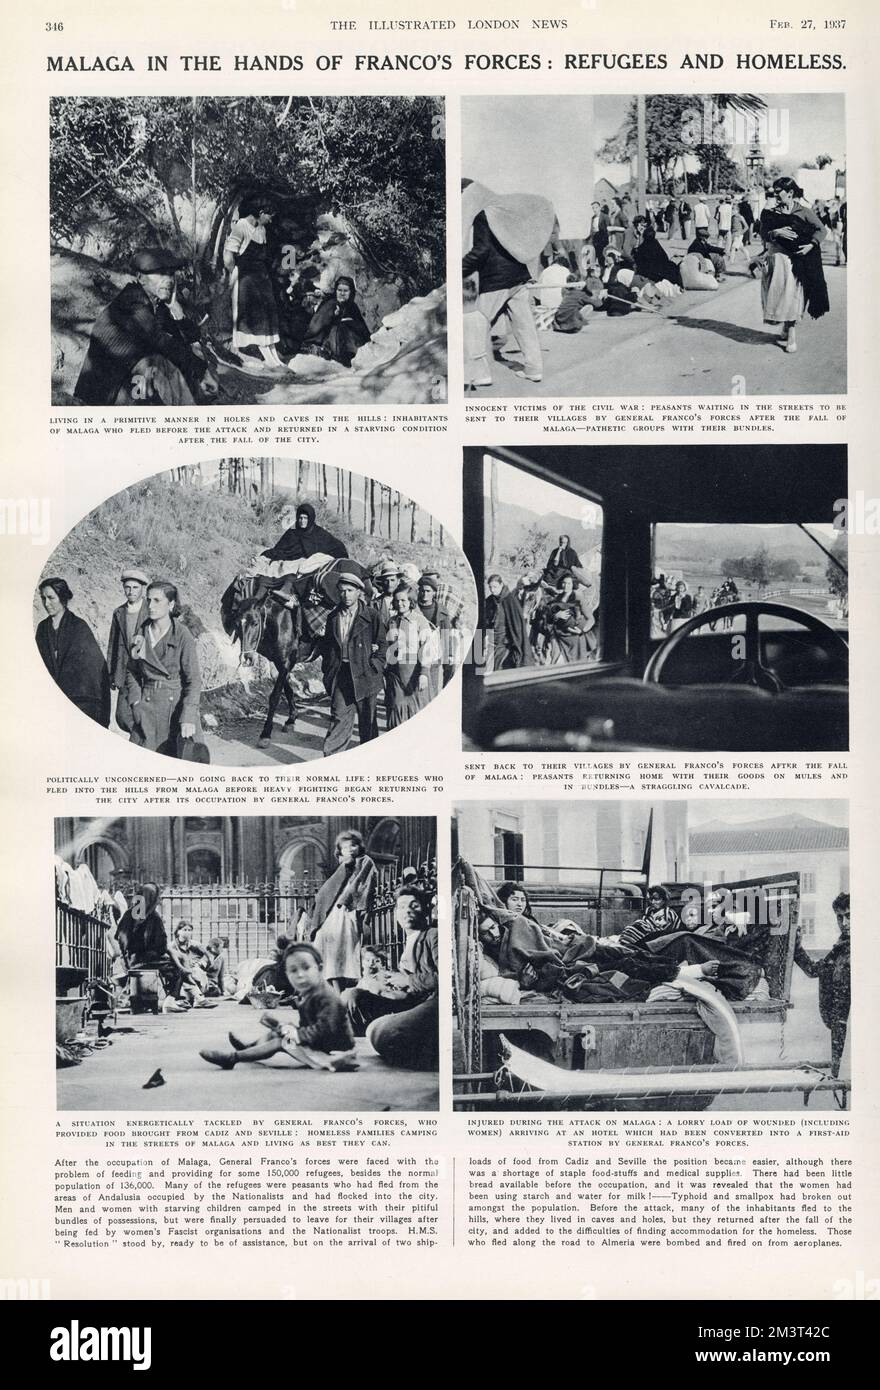 Malaga in den Händen von Francos Streitkräften: Flüchtlinge und Obdachlose. Spanischer Bürgerkrieg. Seite der illustrierten London News, 27. Februar 1937. Stockfoto